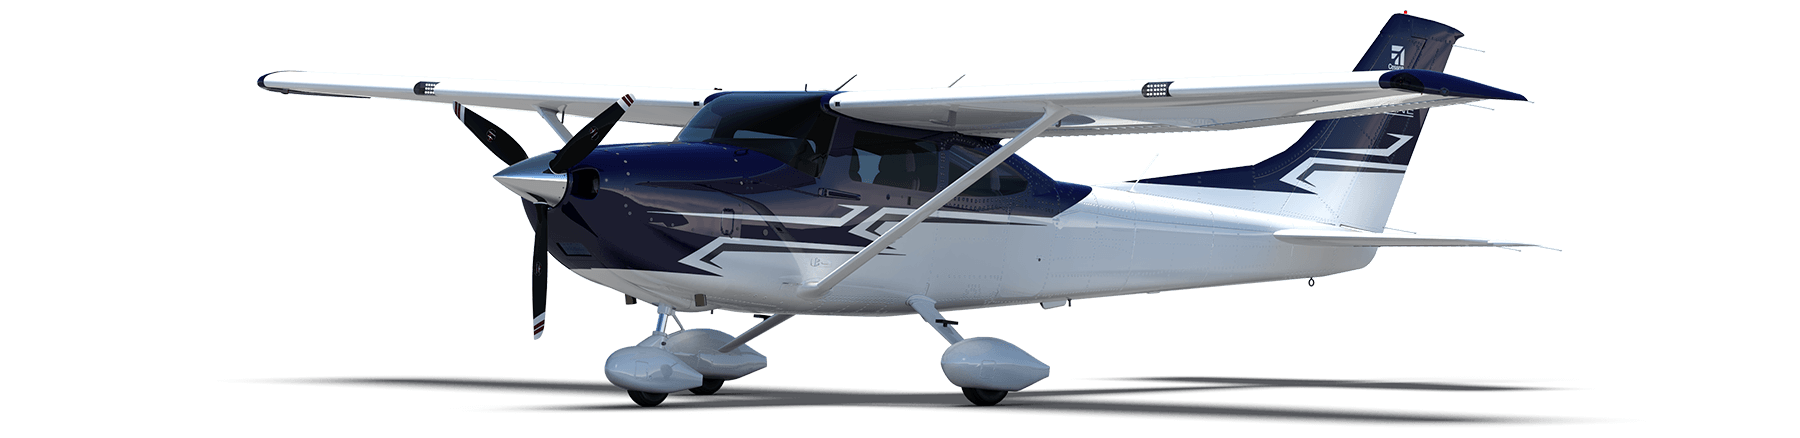 Cessna Skylane Emair Havacilik